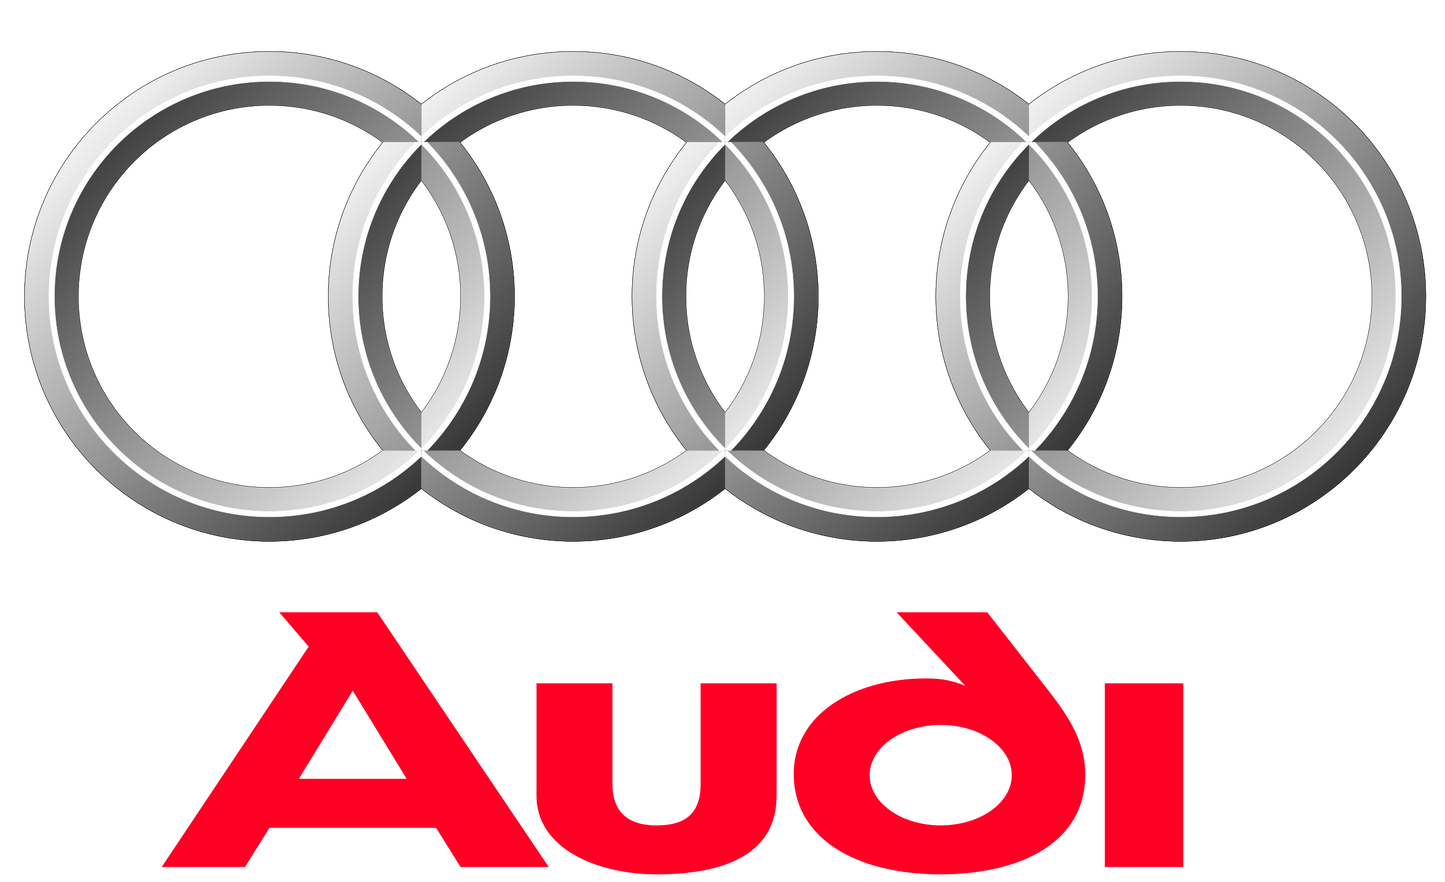 Kód autorádia Audi